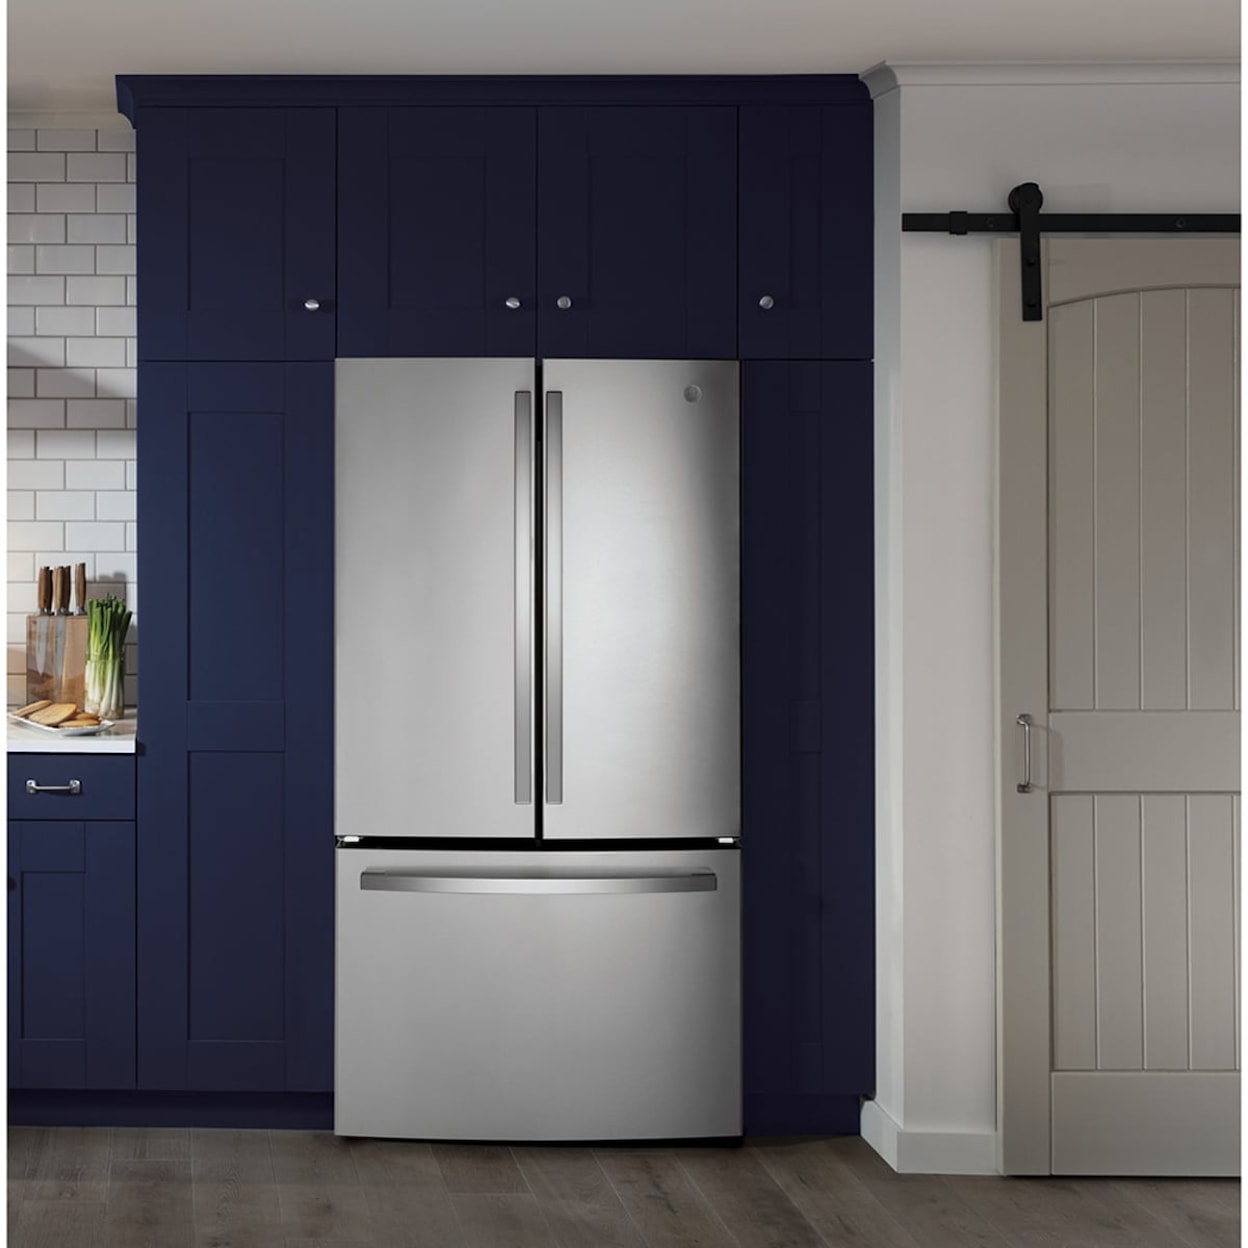 GE Appliances Refridgerators French-Door Refrigerator